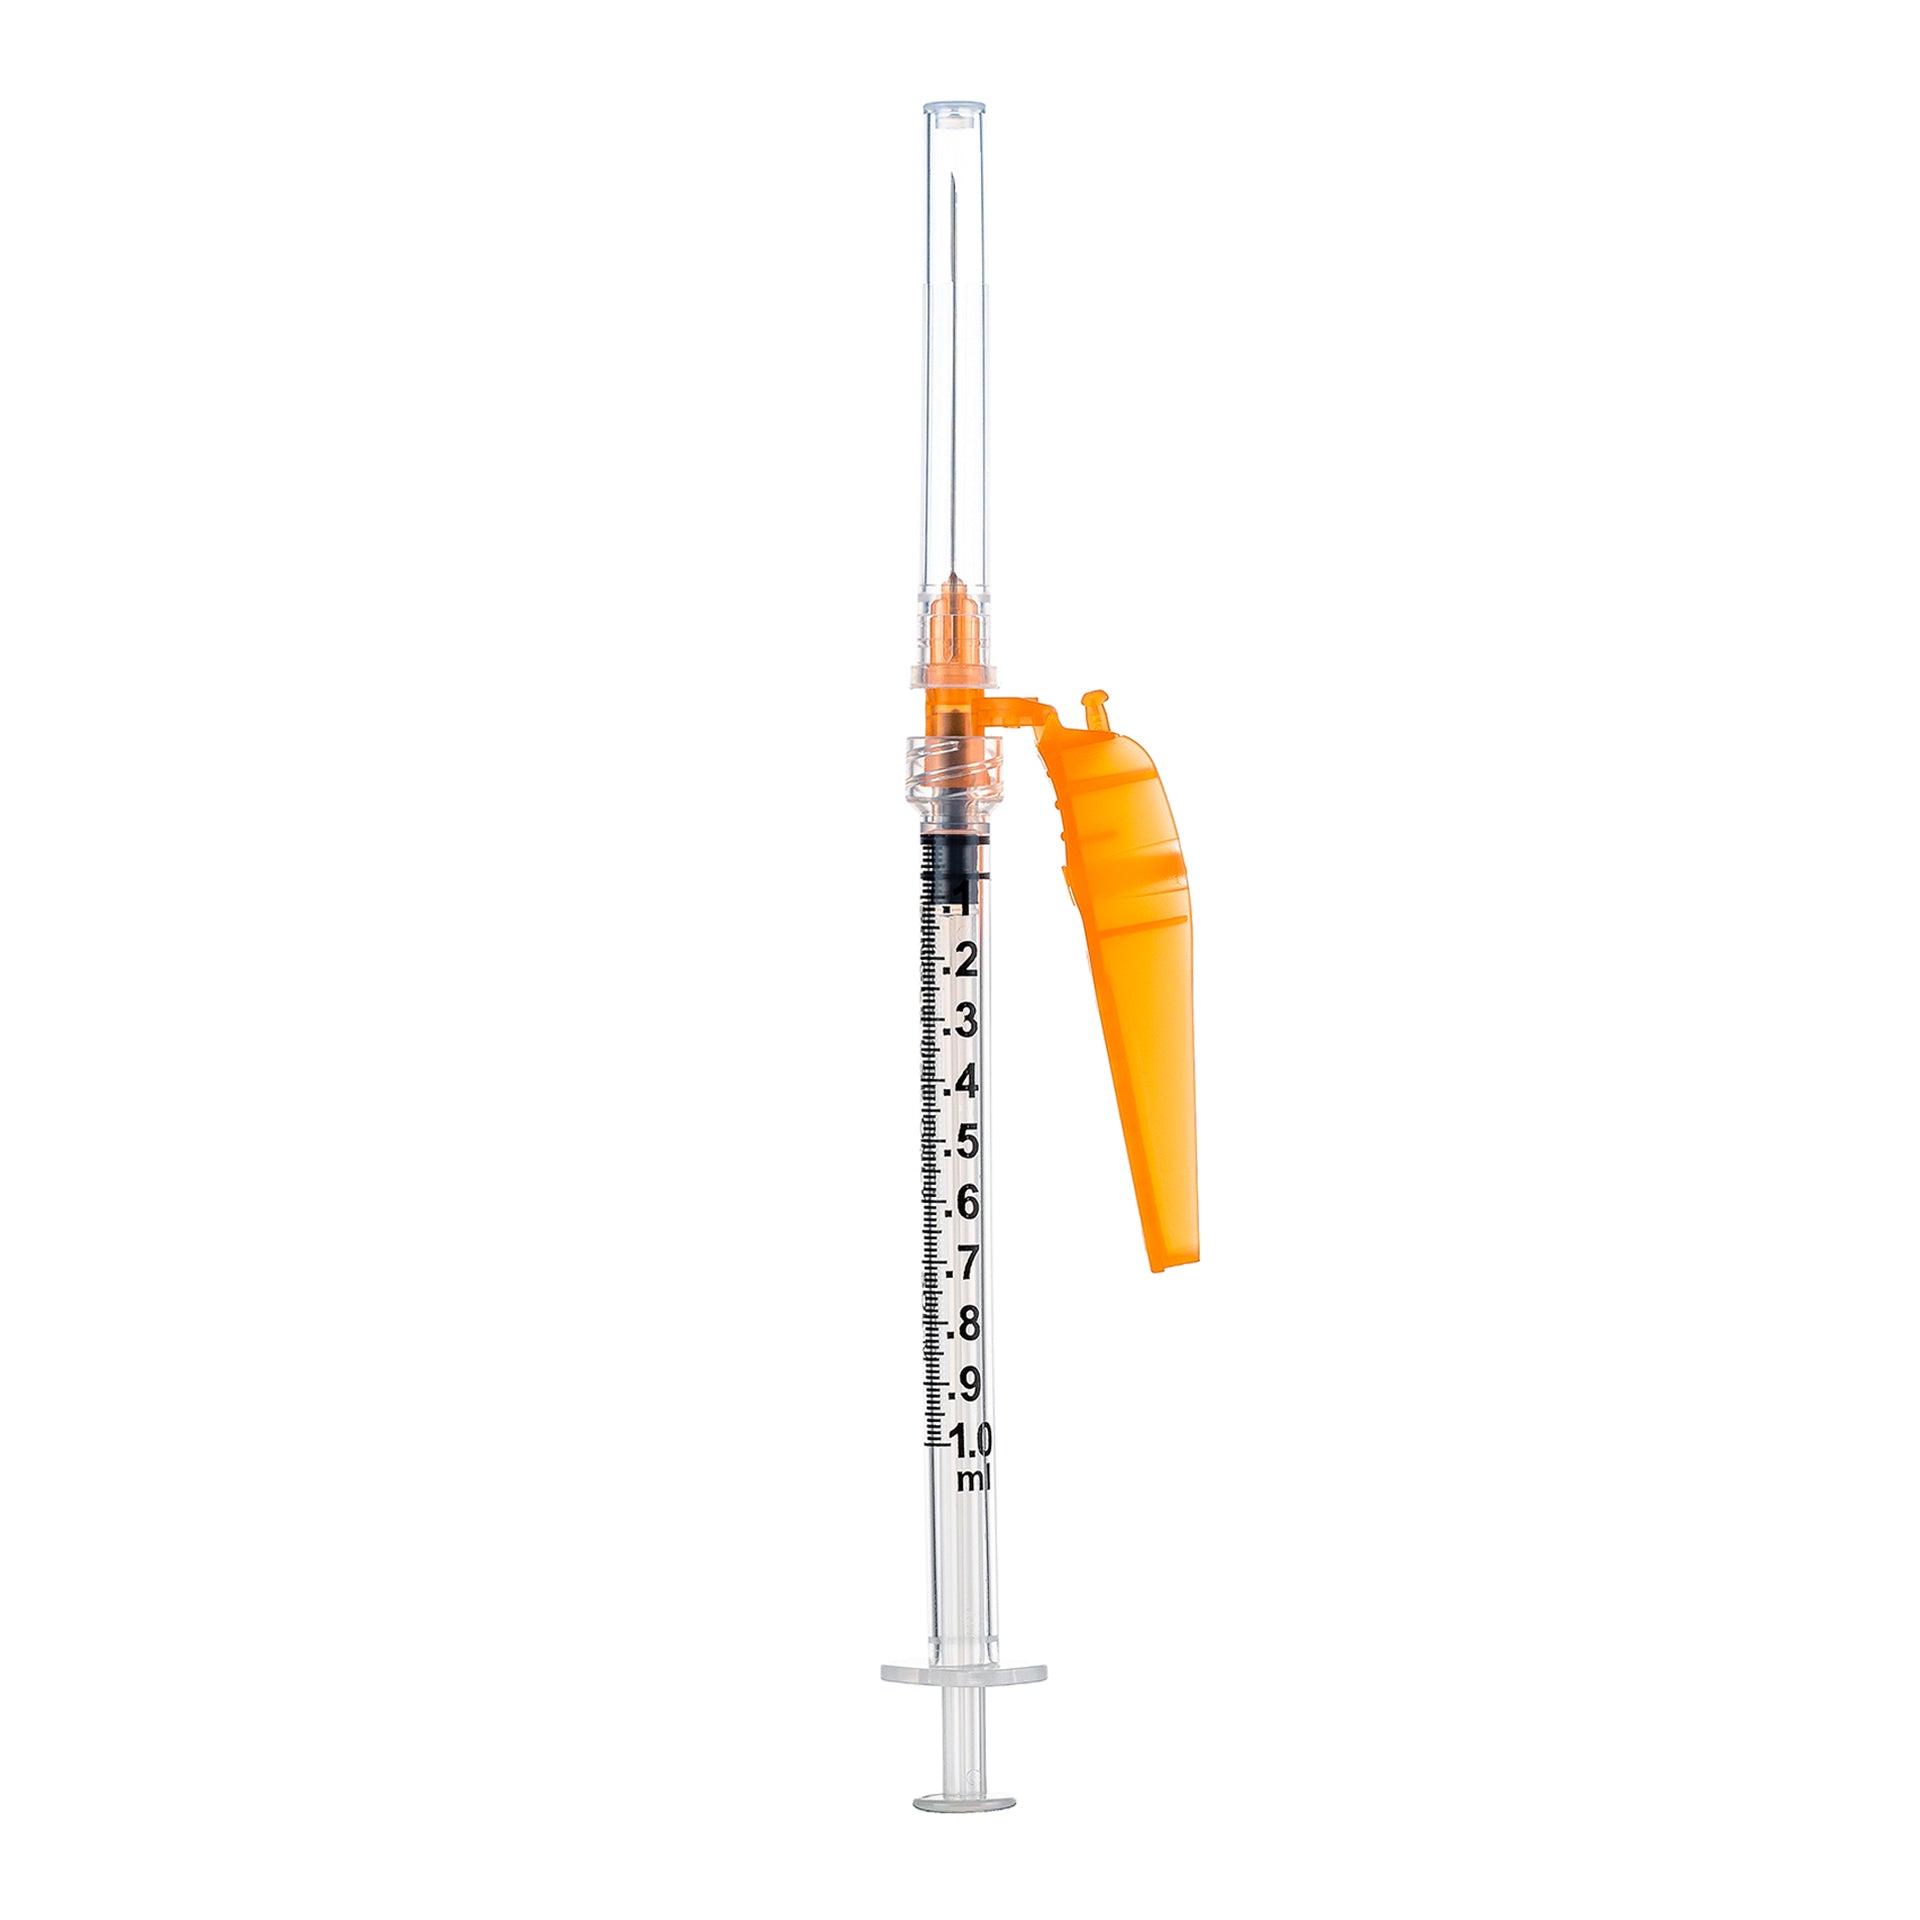 BX/50 - SOL-CARE 3ml Luer Lock Syringe w/Safety Needle 22G*1 (needle aside)